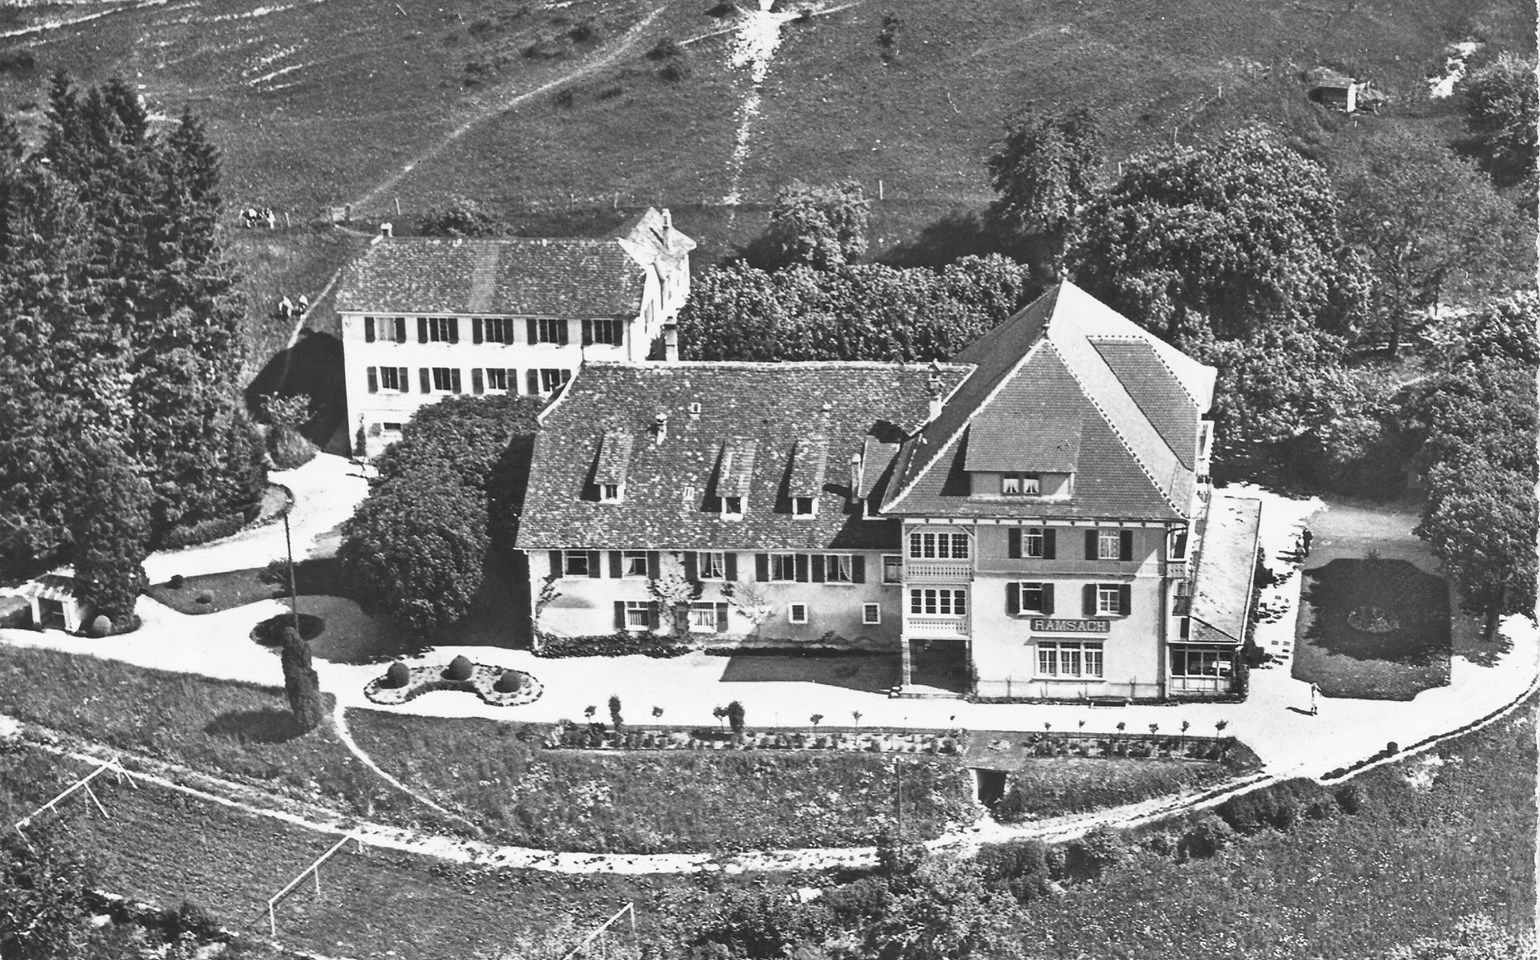 Historisches Bild des Bad Ramsach Quellhotel Läufelfingen